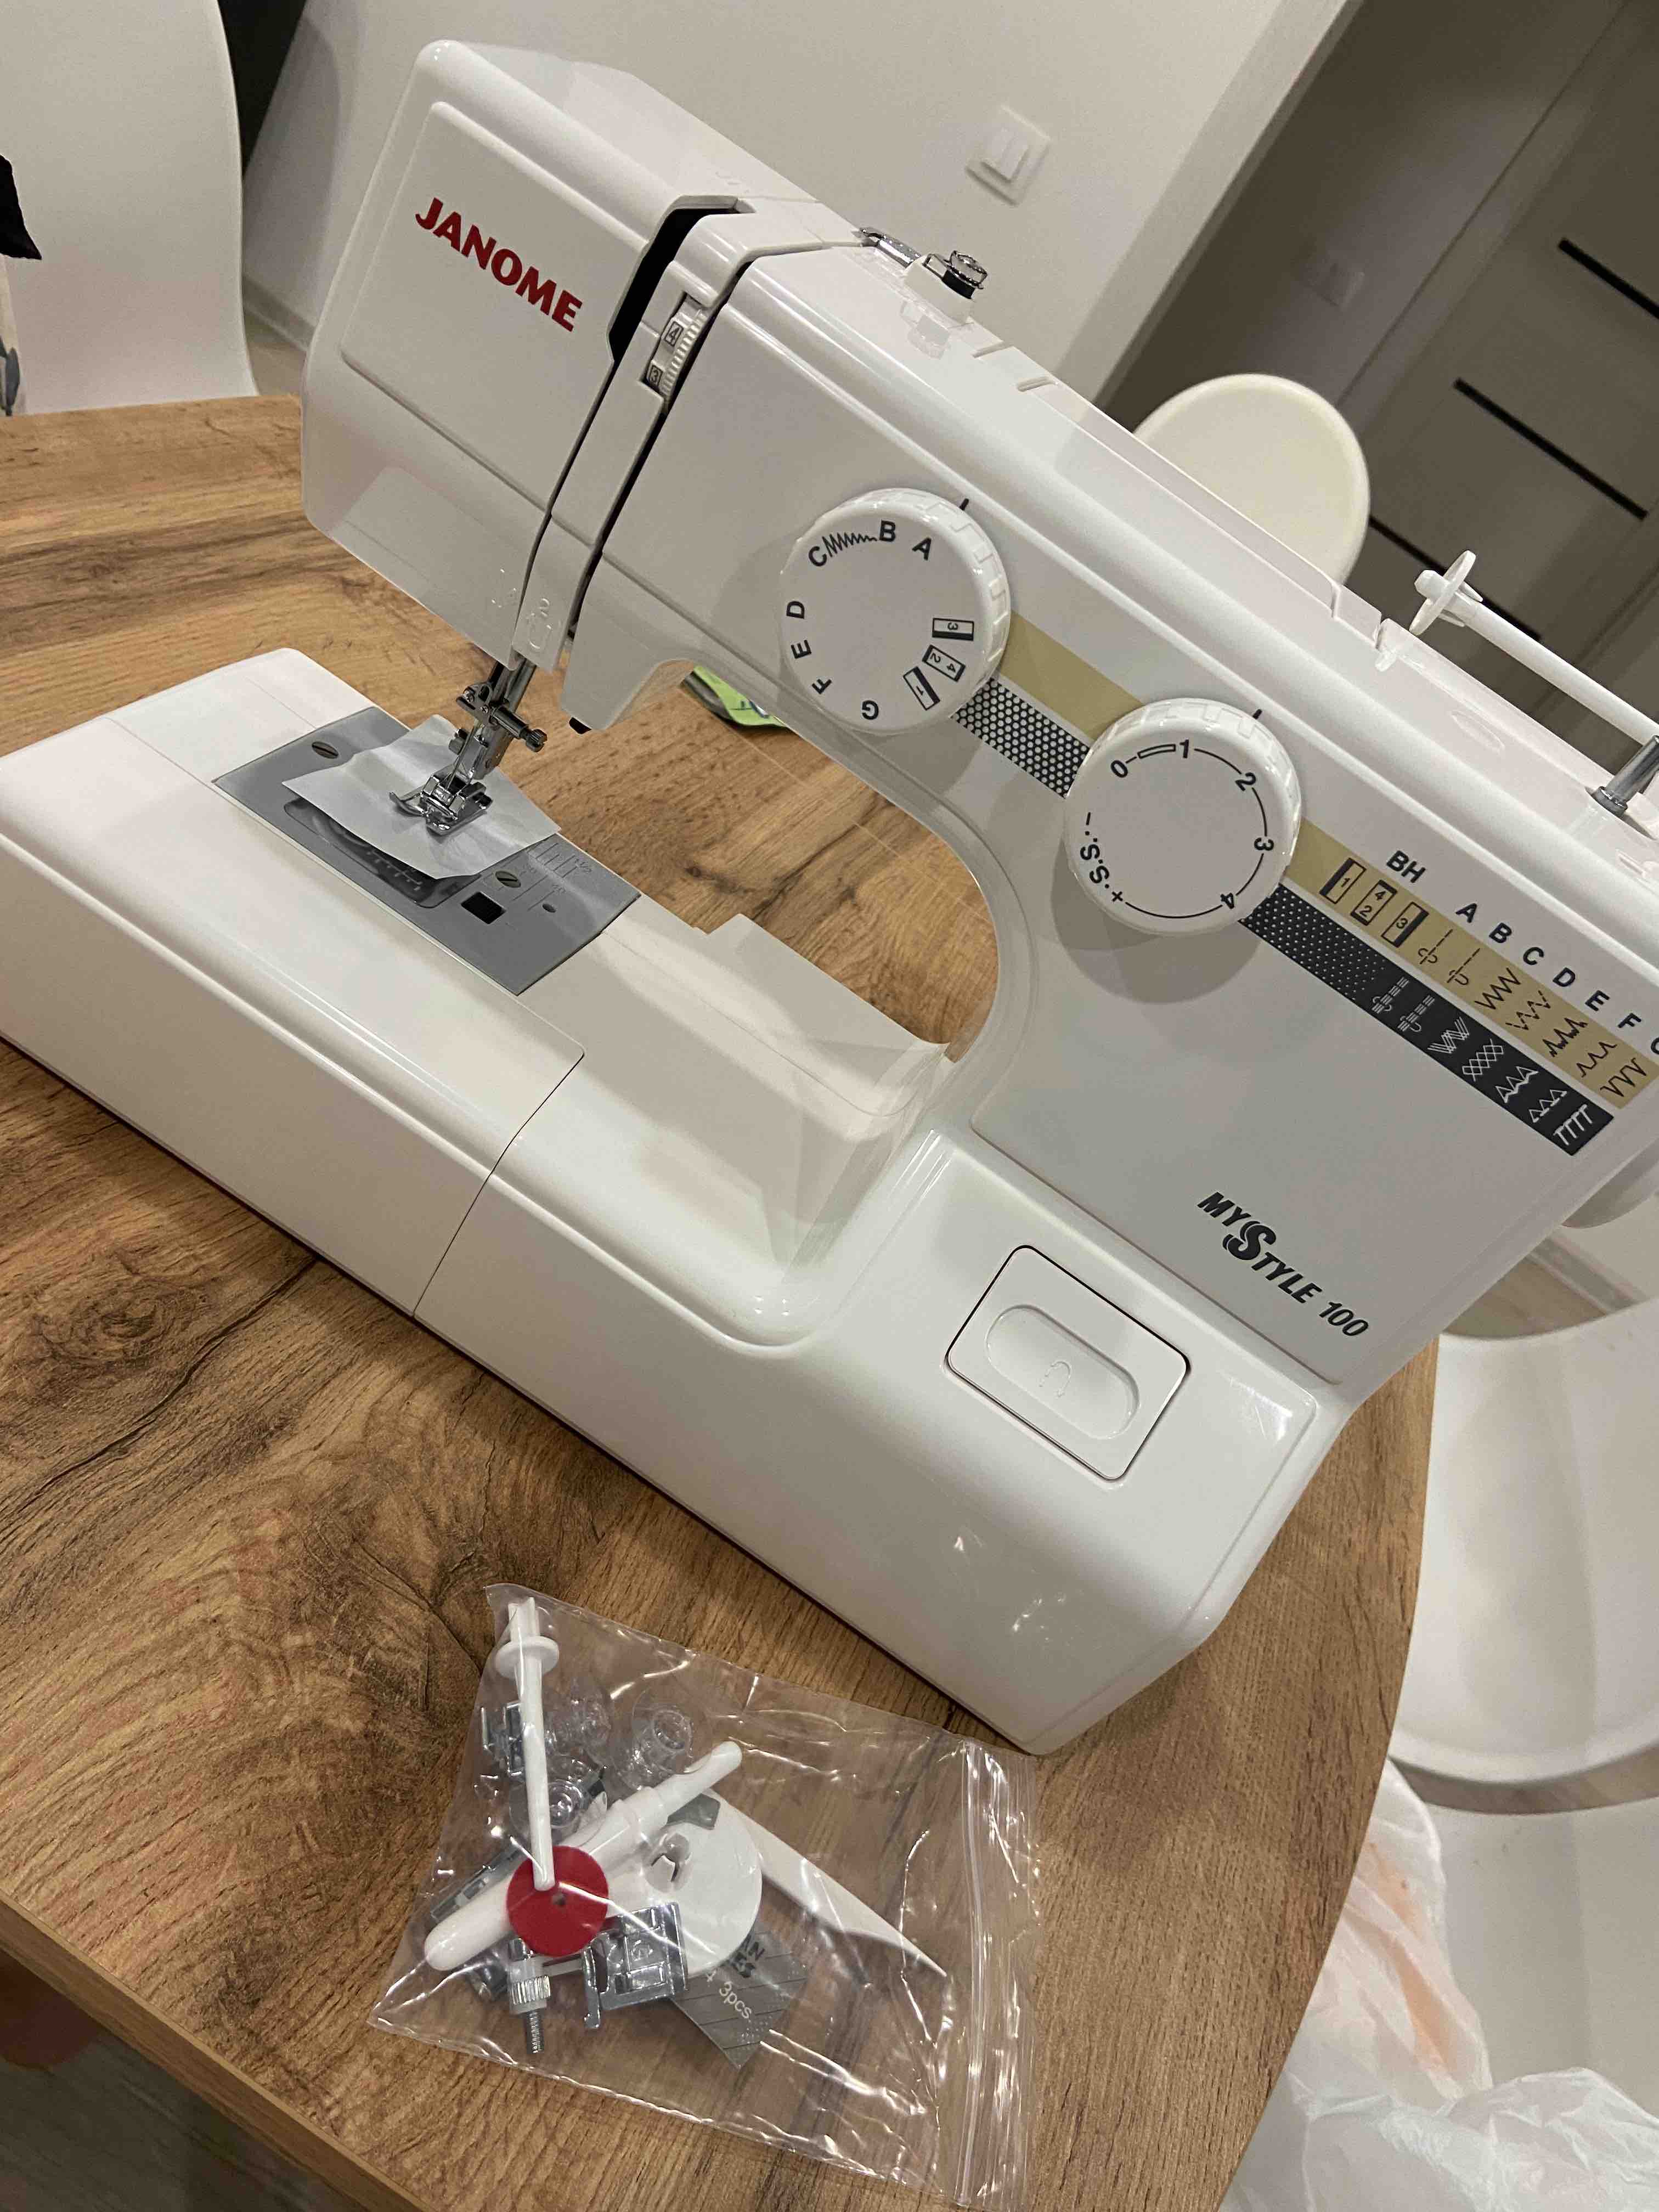 Janome My Style 100 Sewing Machine